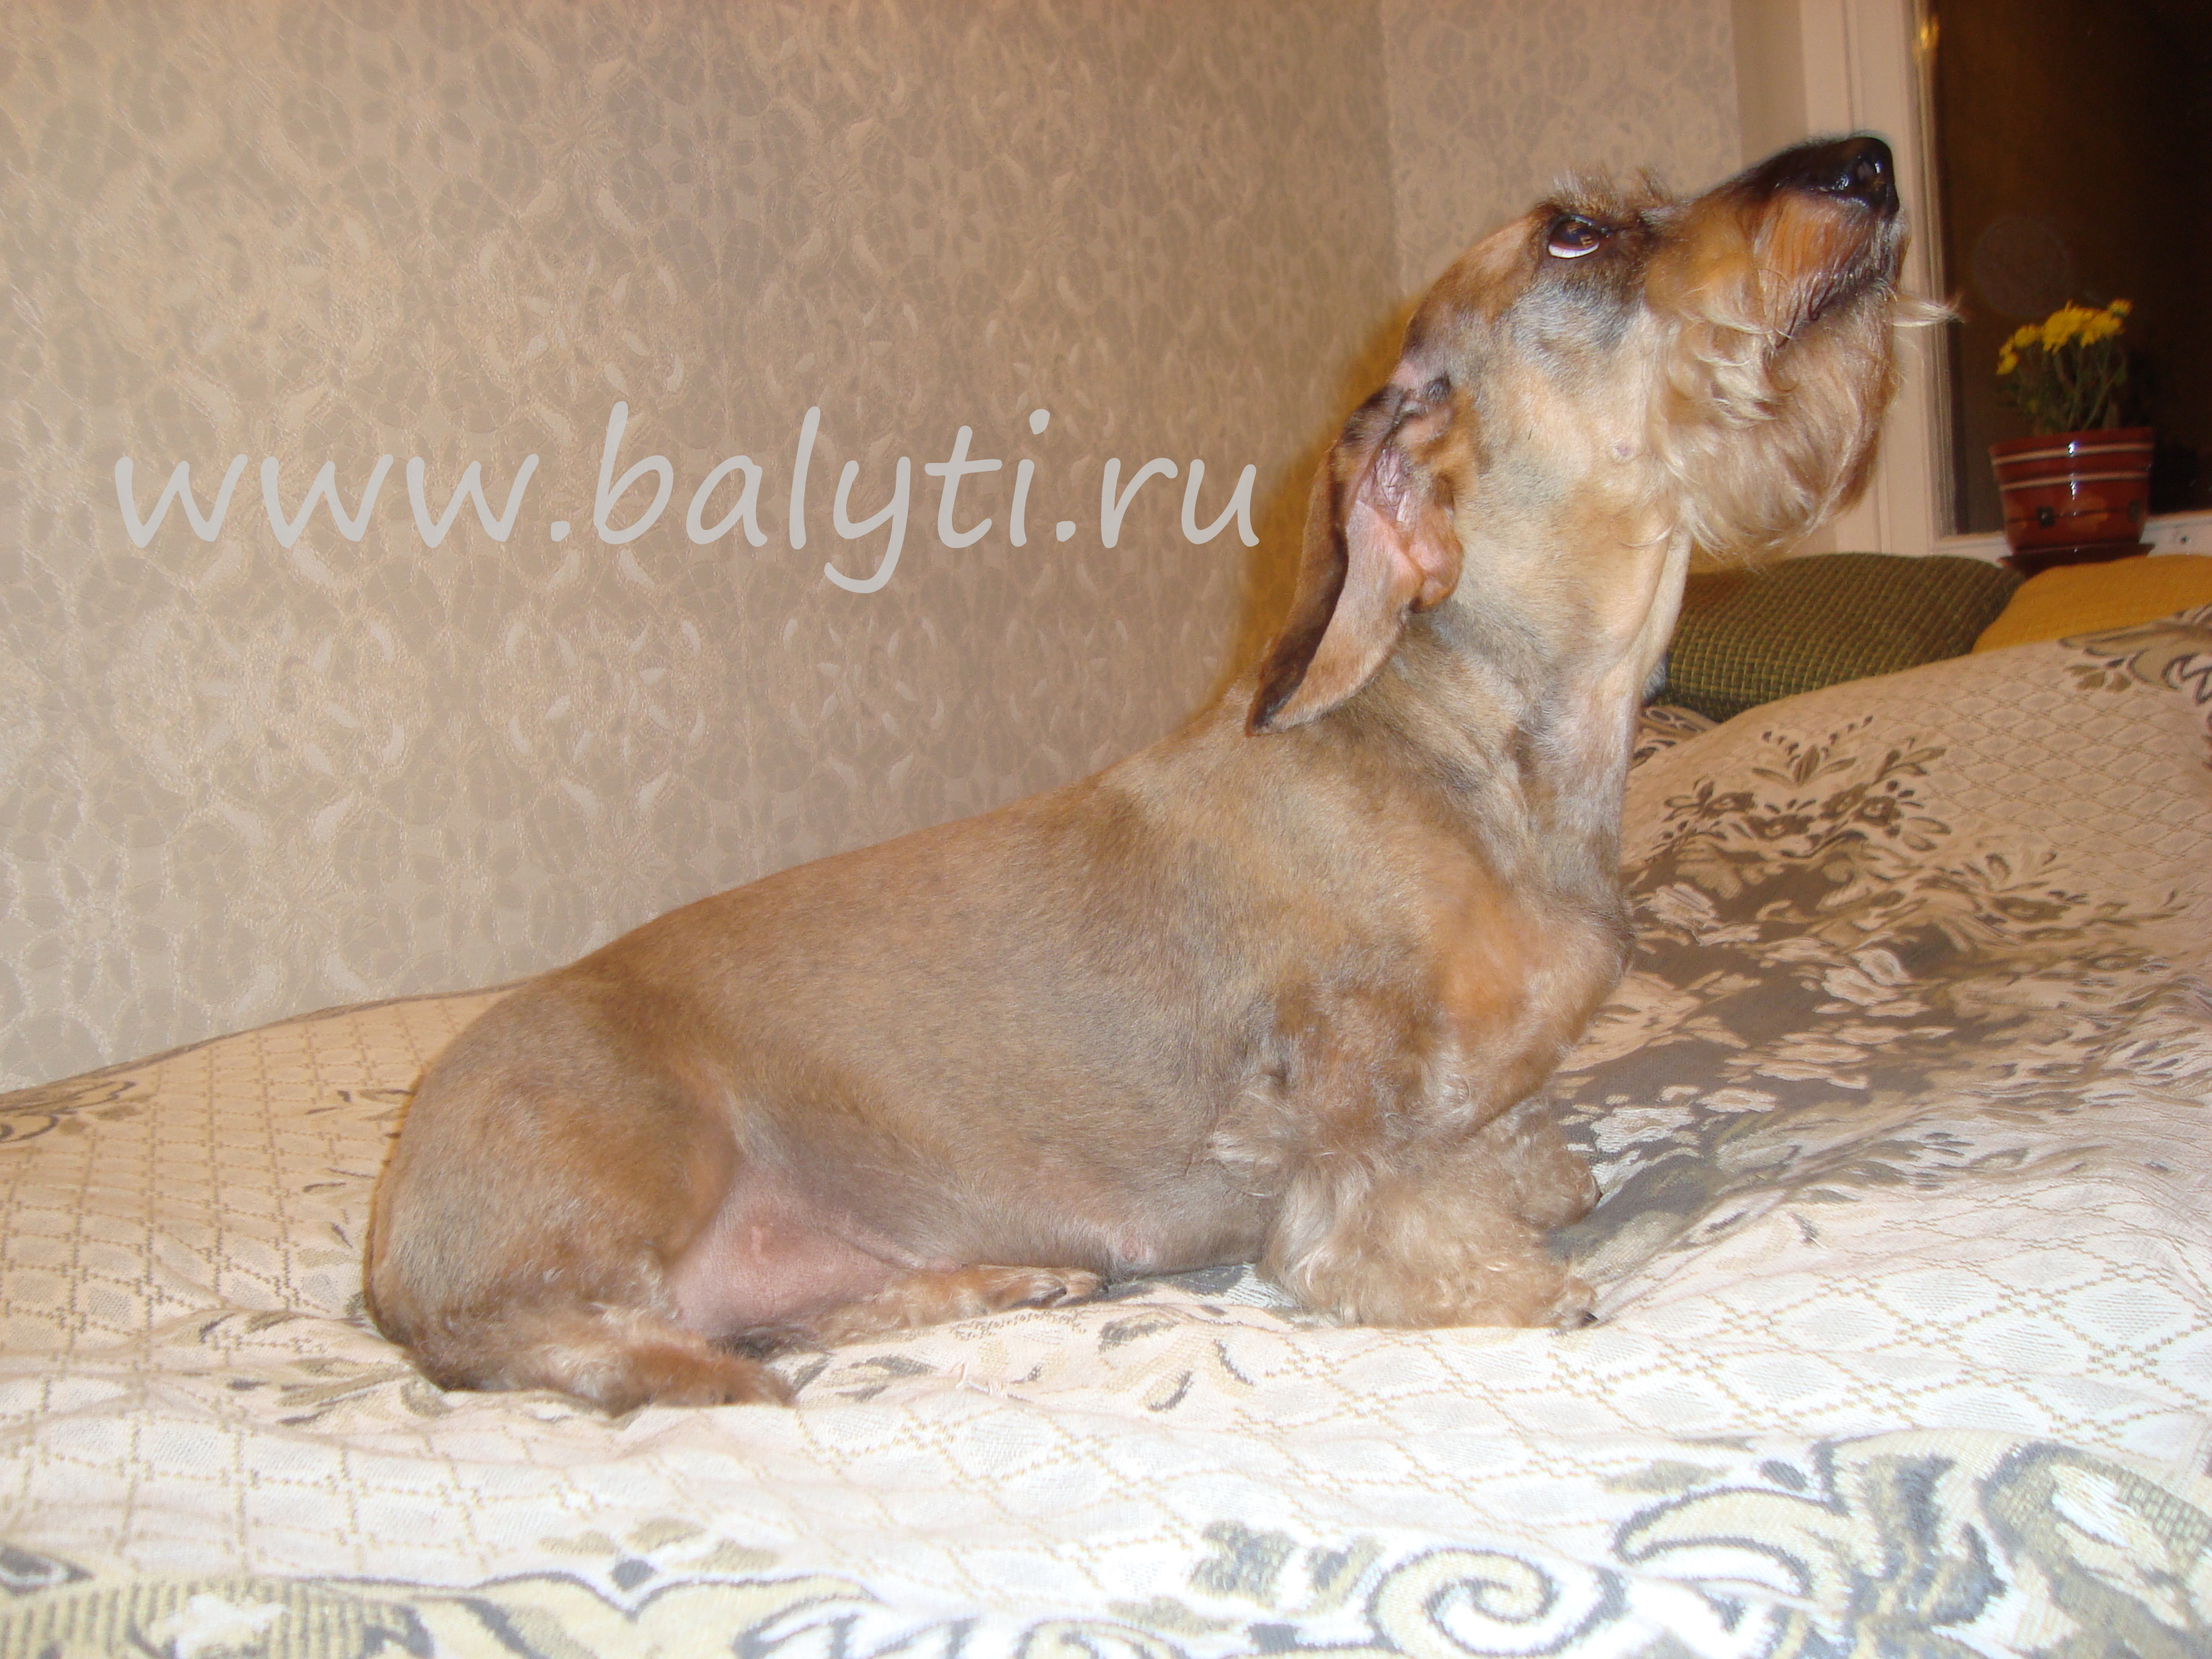 Триминг, стрижка жесткошерстной таксы- щенок. Зоосалон Балути